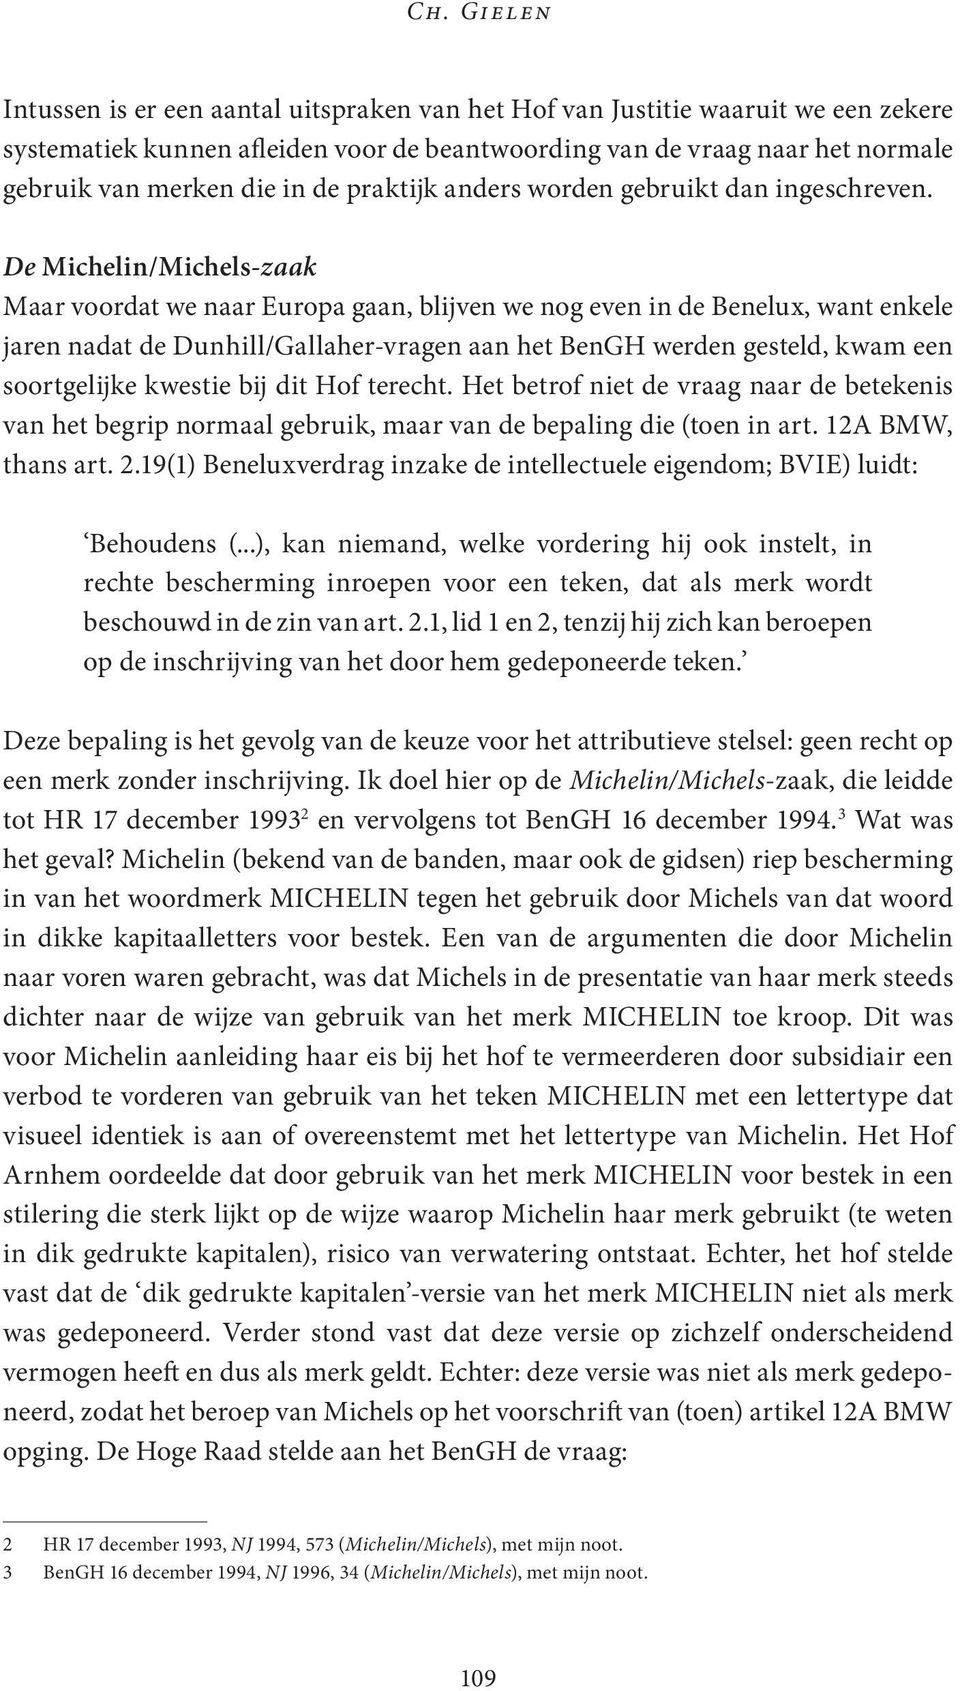 De Michelin/Michels-zaak Maar voordat we naar Europa gaan, blijven we nog even in de Benelux, want enkele jaren nadat de Dunhill/Gallaher-vragen aan het BenGH werden gesteld, kwam een soortgelijke